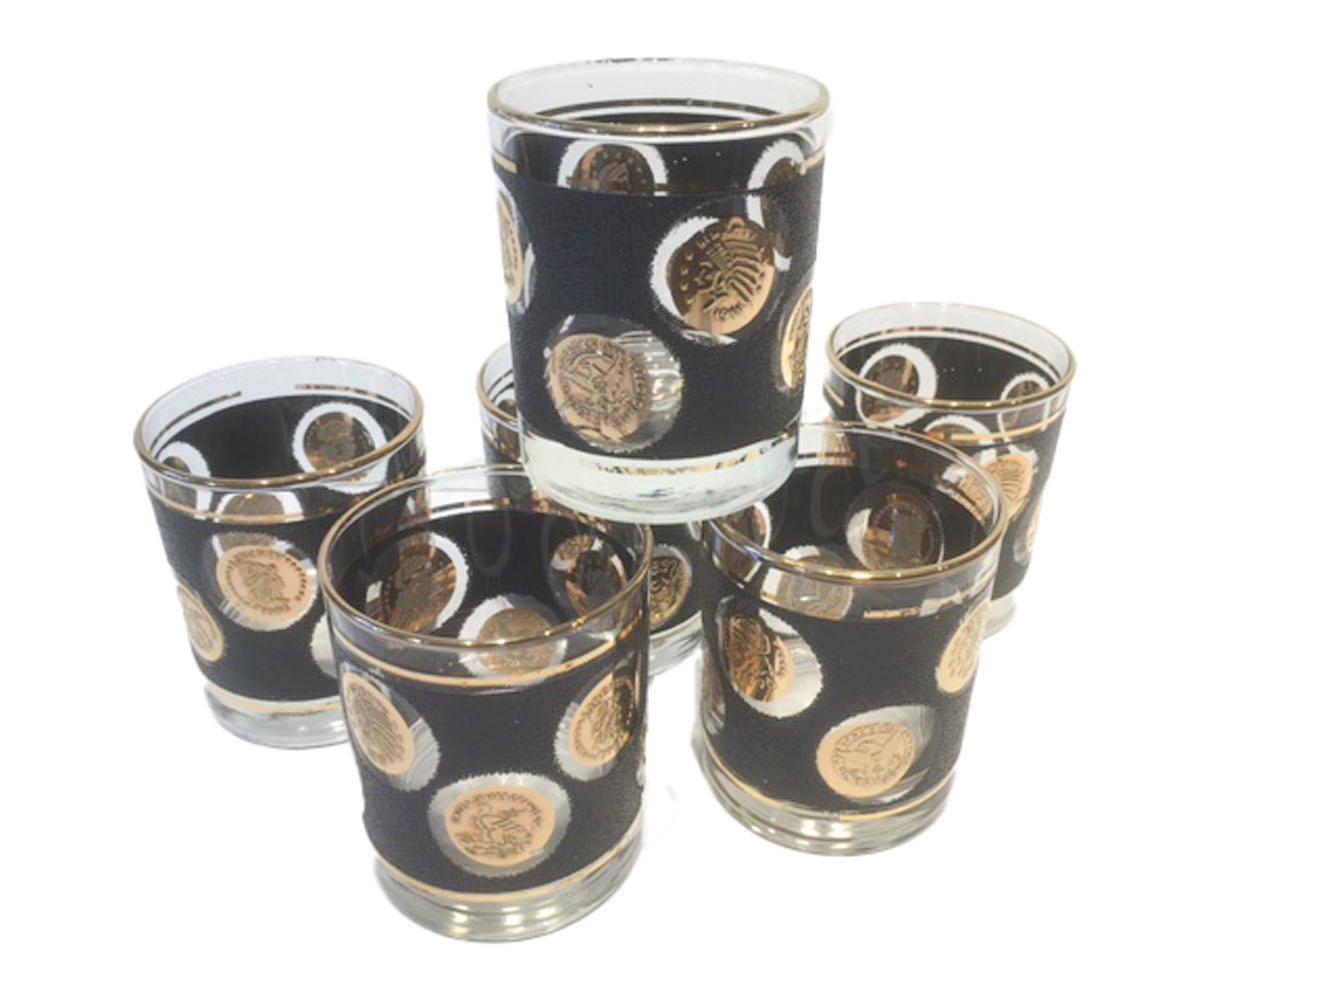 Libbey-Bargeschirr im Vintage-Stil mit Goldmünzen auf schwarzem Kieselgrund. Zwölfteiliges Set mit 6 Highball-Gläsern und 6 Whiskey-/Rocks-Gläsern.

Maße: 6 - Highball: 5